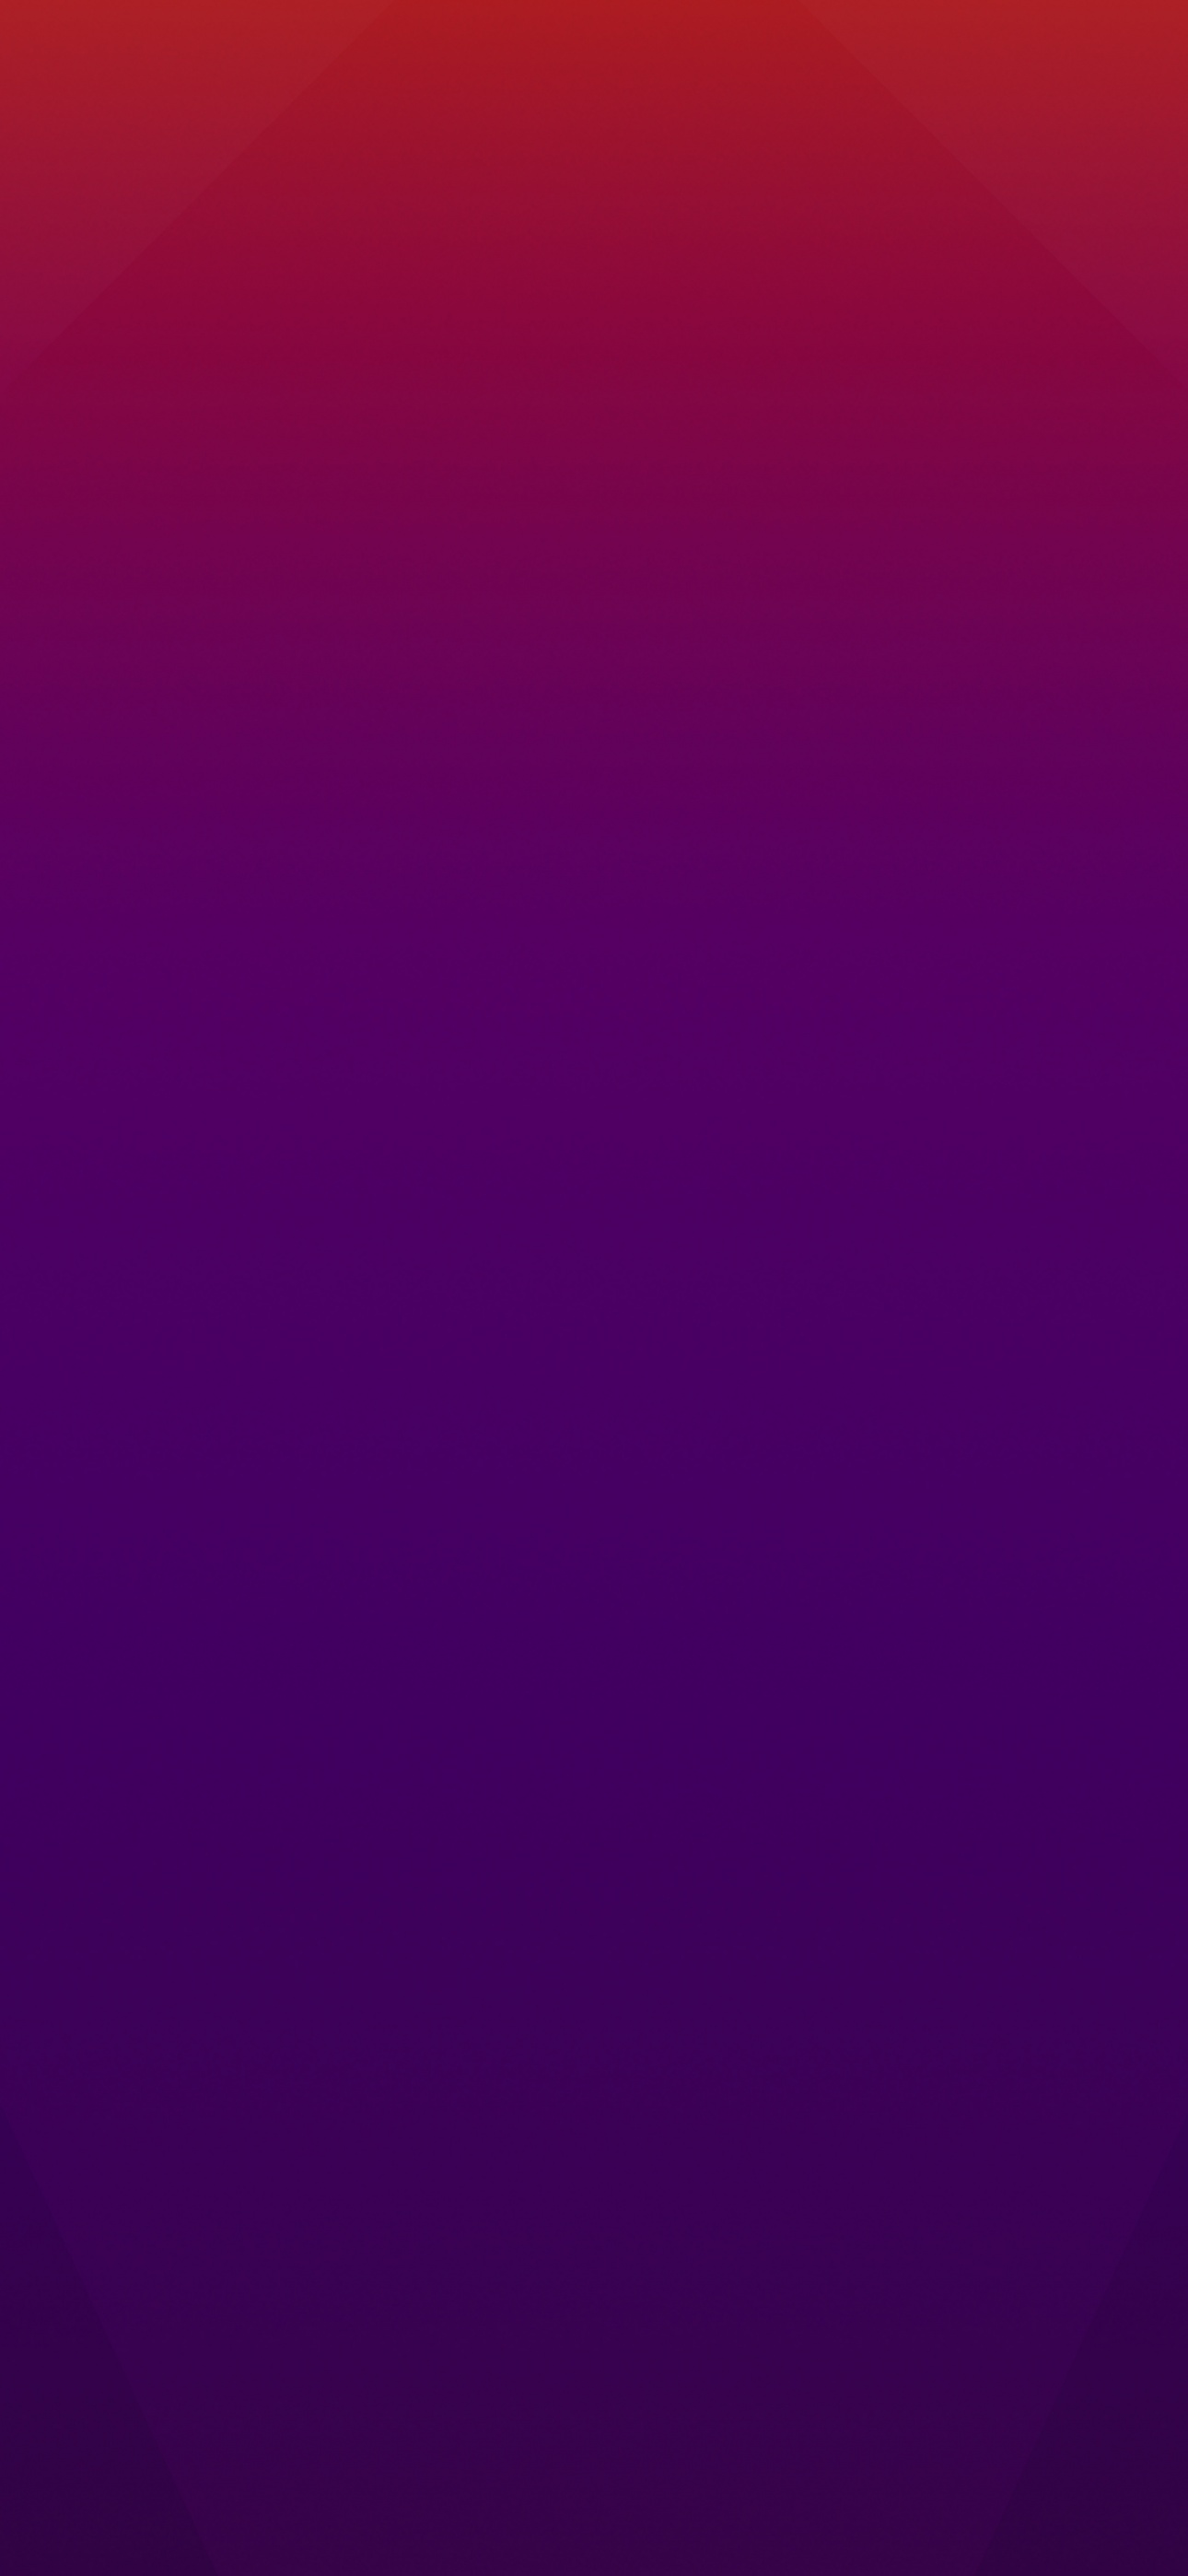 47+] Purple and Red Wallpaper - WallpaperSafari